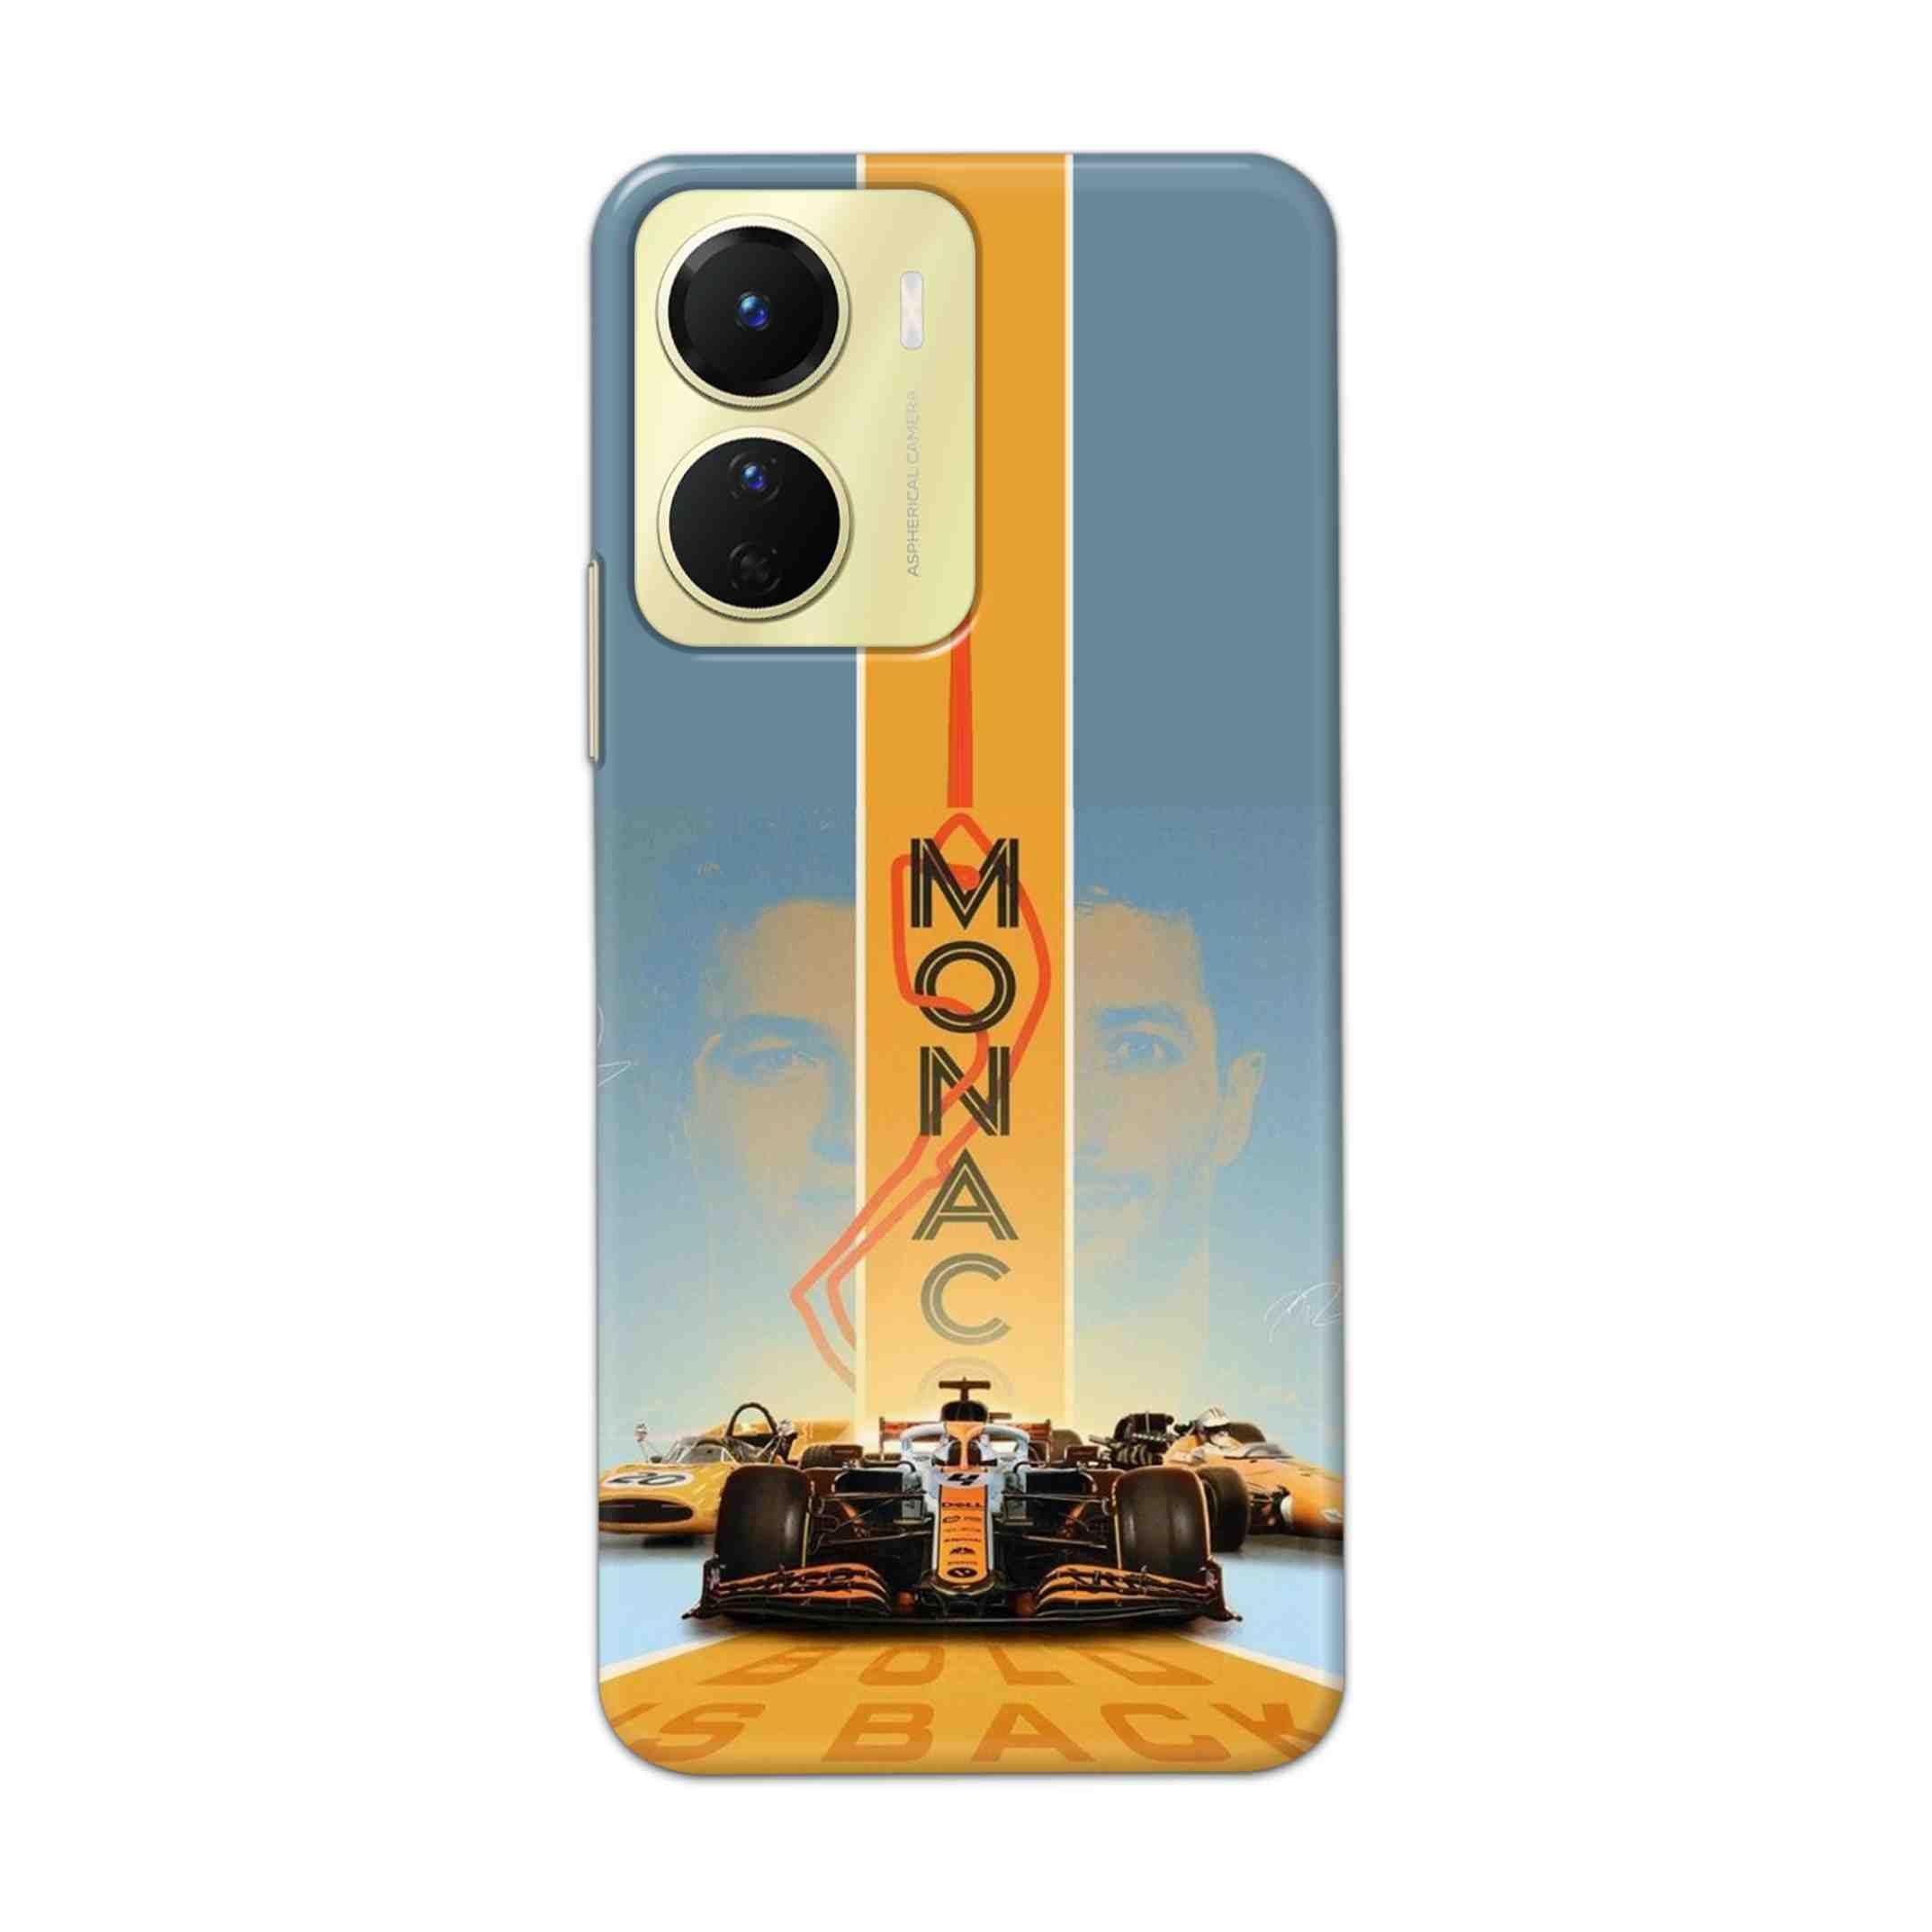 Buy Monac Formula Hard Back Mobile Phone Case Cover For Vivo Y16 Online